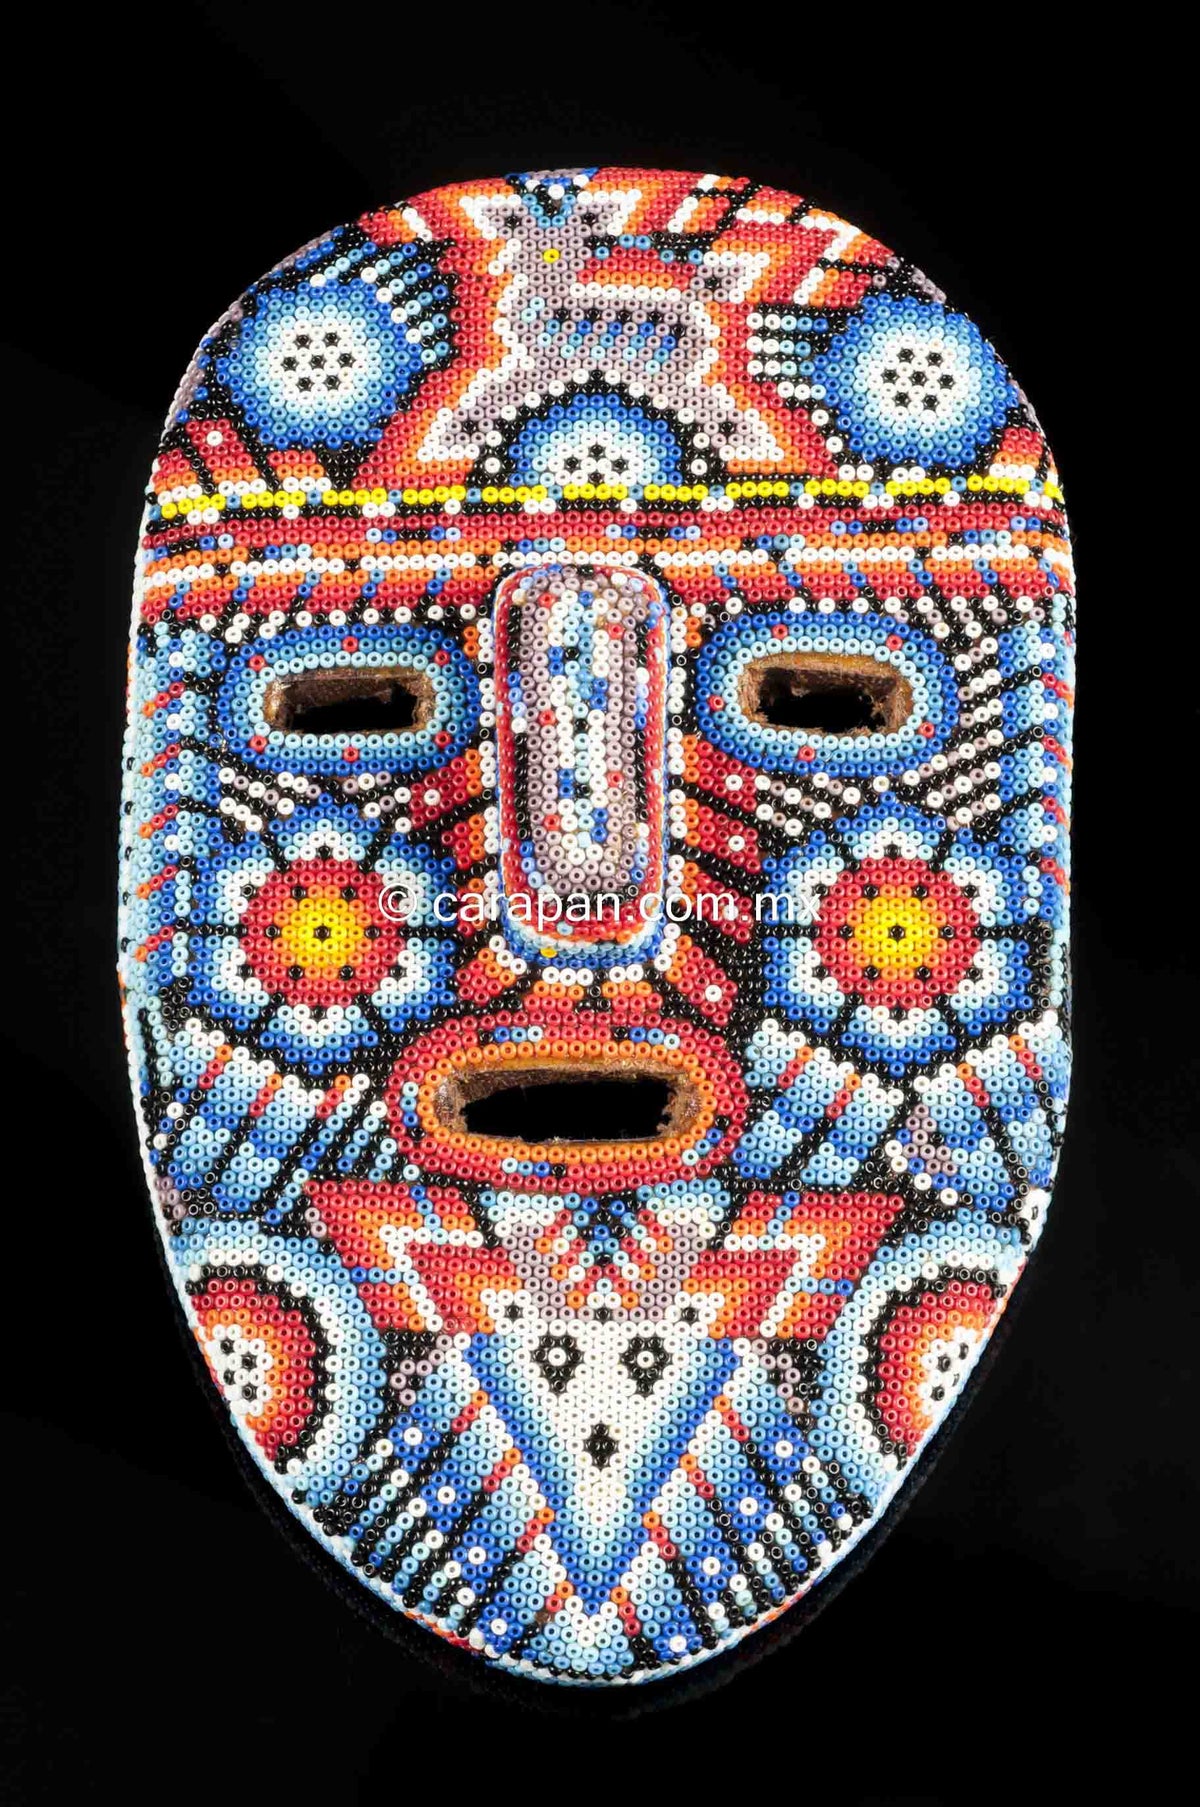 Huichol Beaded Mask with Sacred Symbols Indigenous Mexican Folk Art